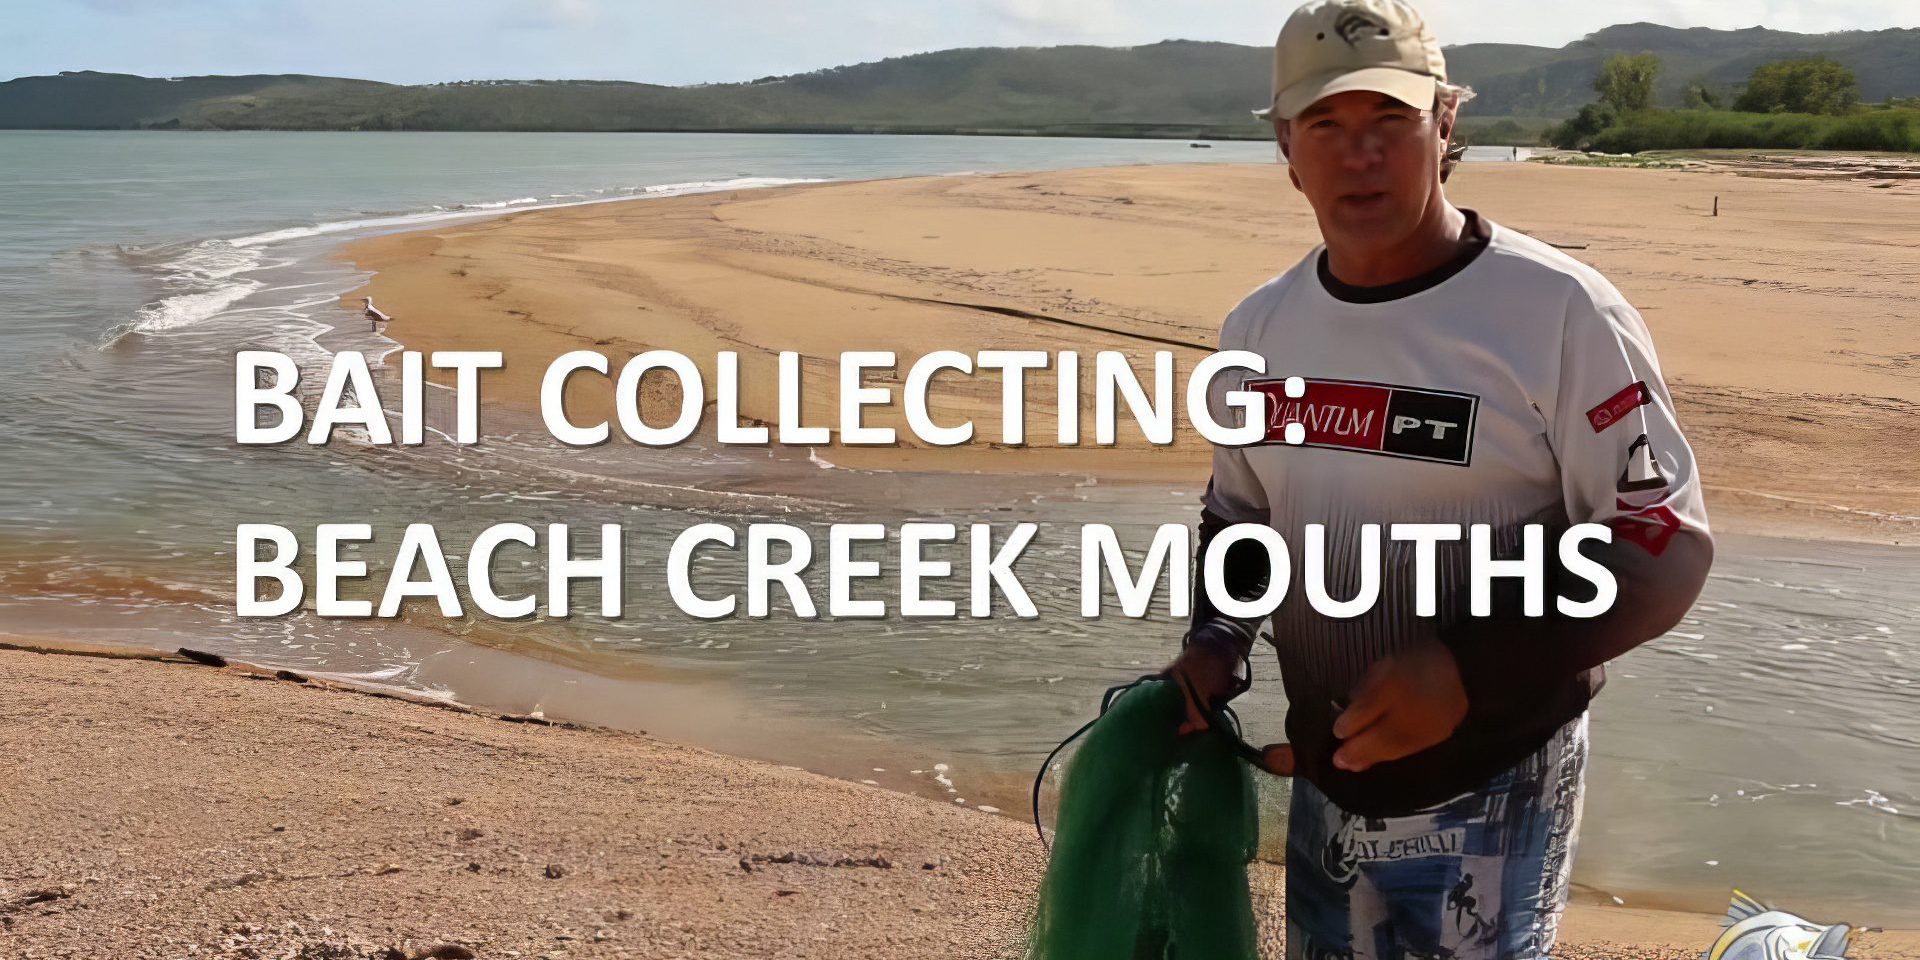 beach-creek-mouths-for-bait